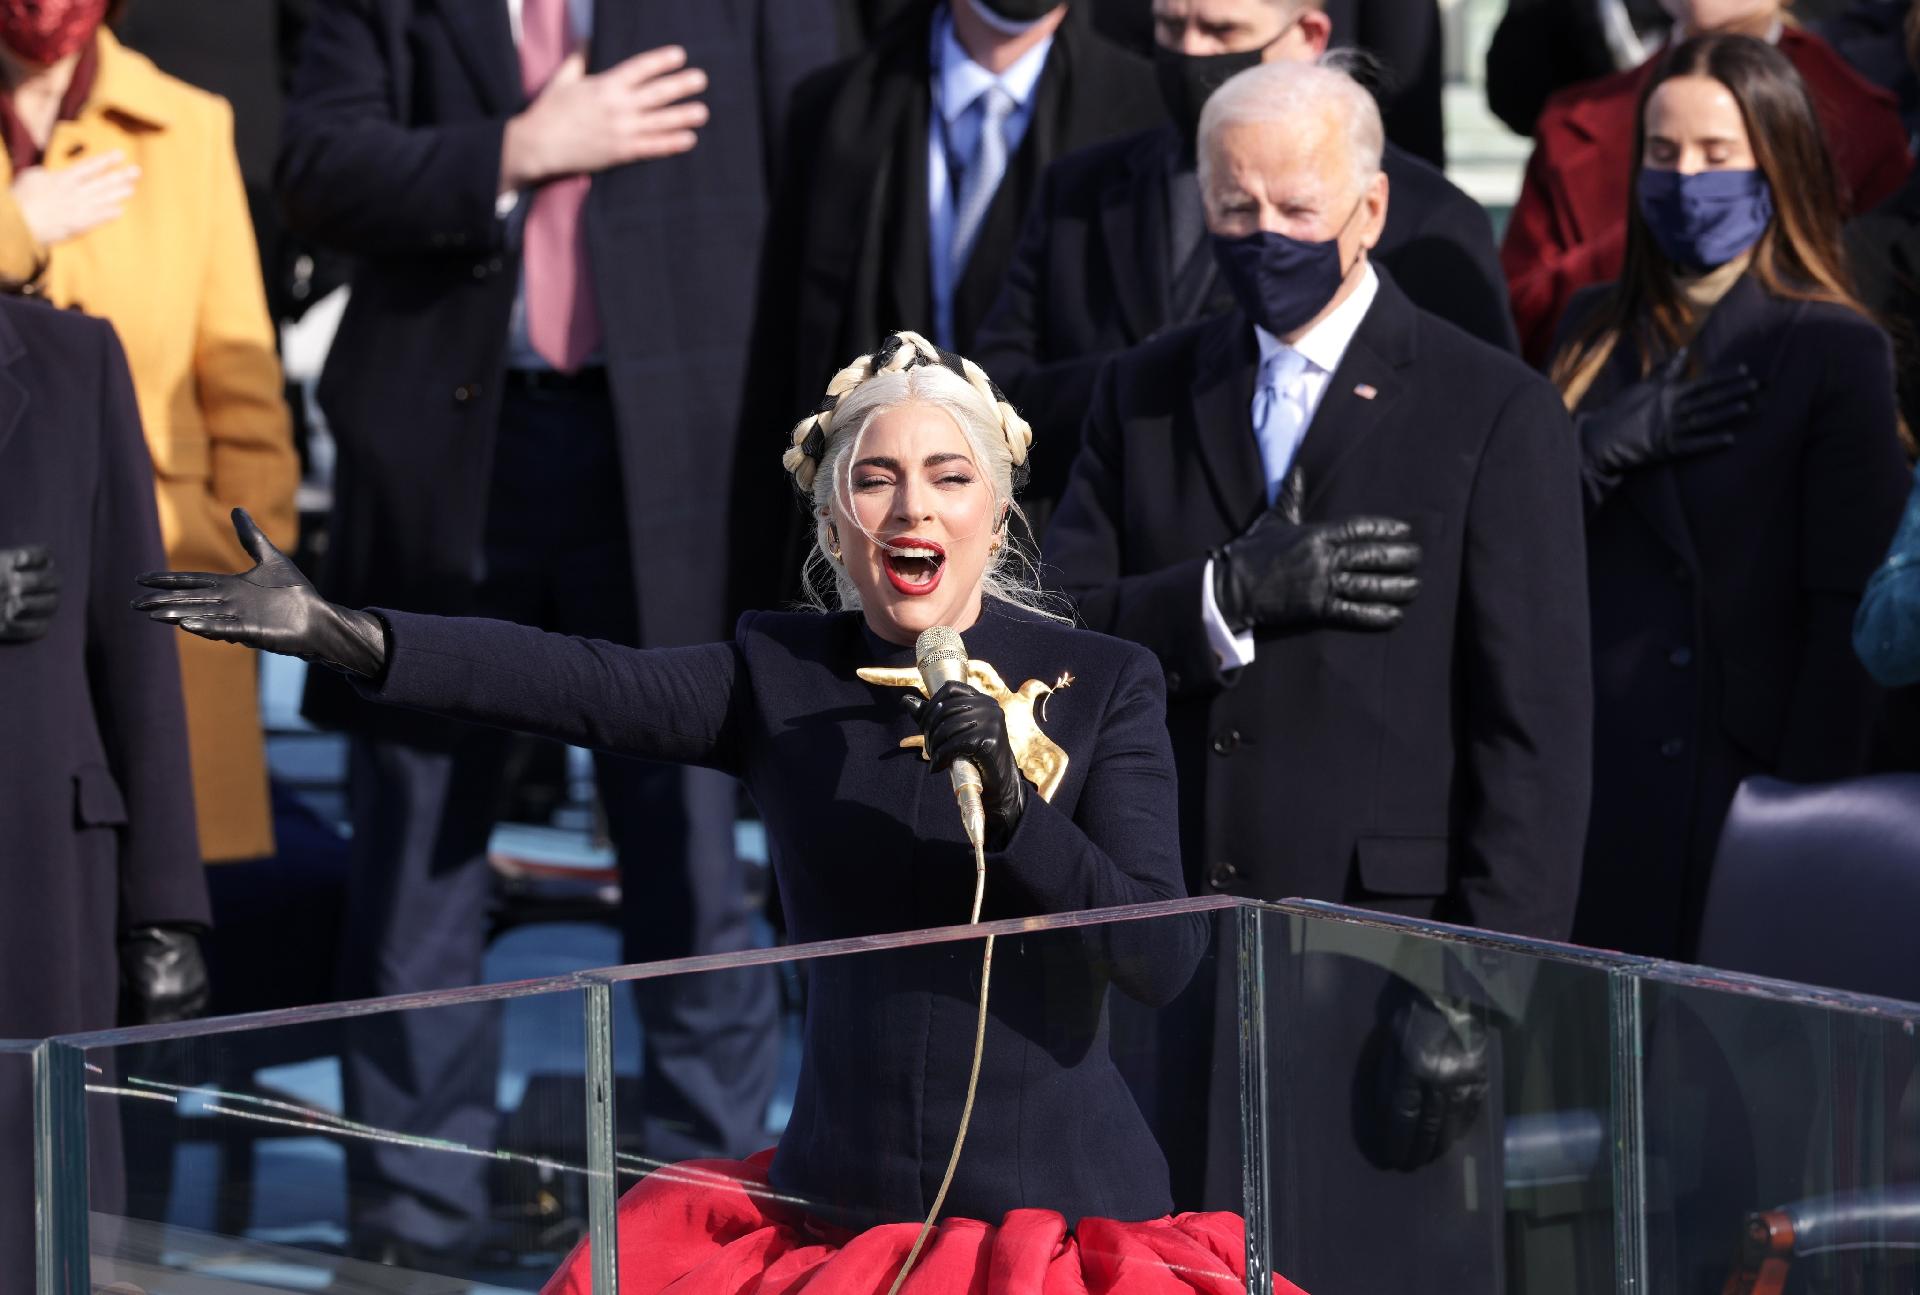 Fotos: Lady Gaga, Jennifer Lopez e mais: os looks da posse de Joe Biden nos EUA - 20/01/2021 - UOL TV e Famosos